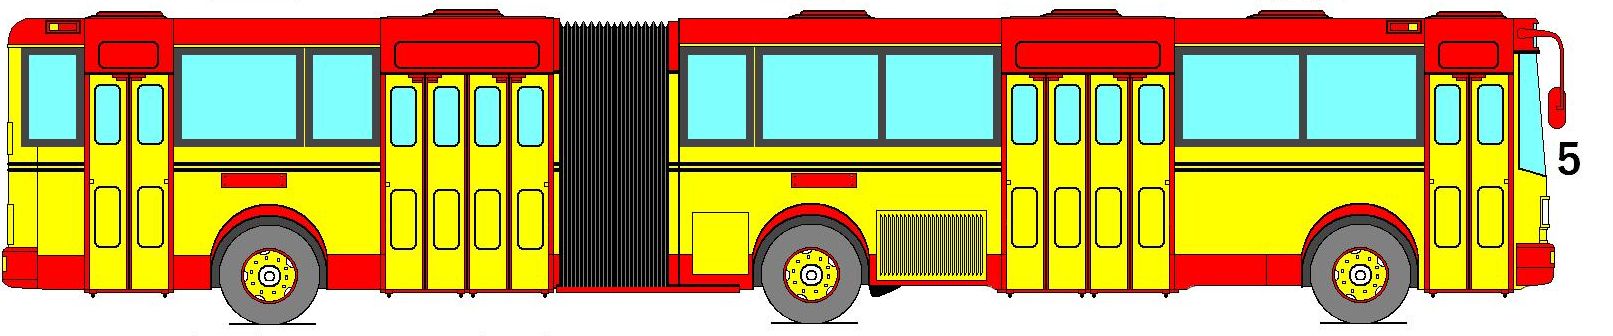 Краткая фантастическая история автобуса ЛиАЗ-158В